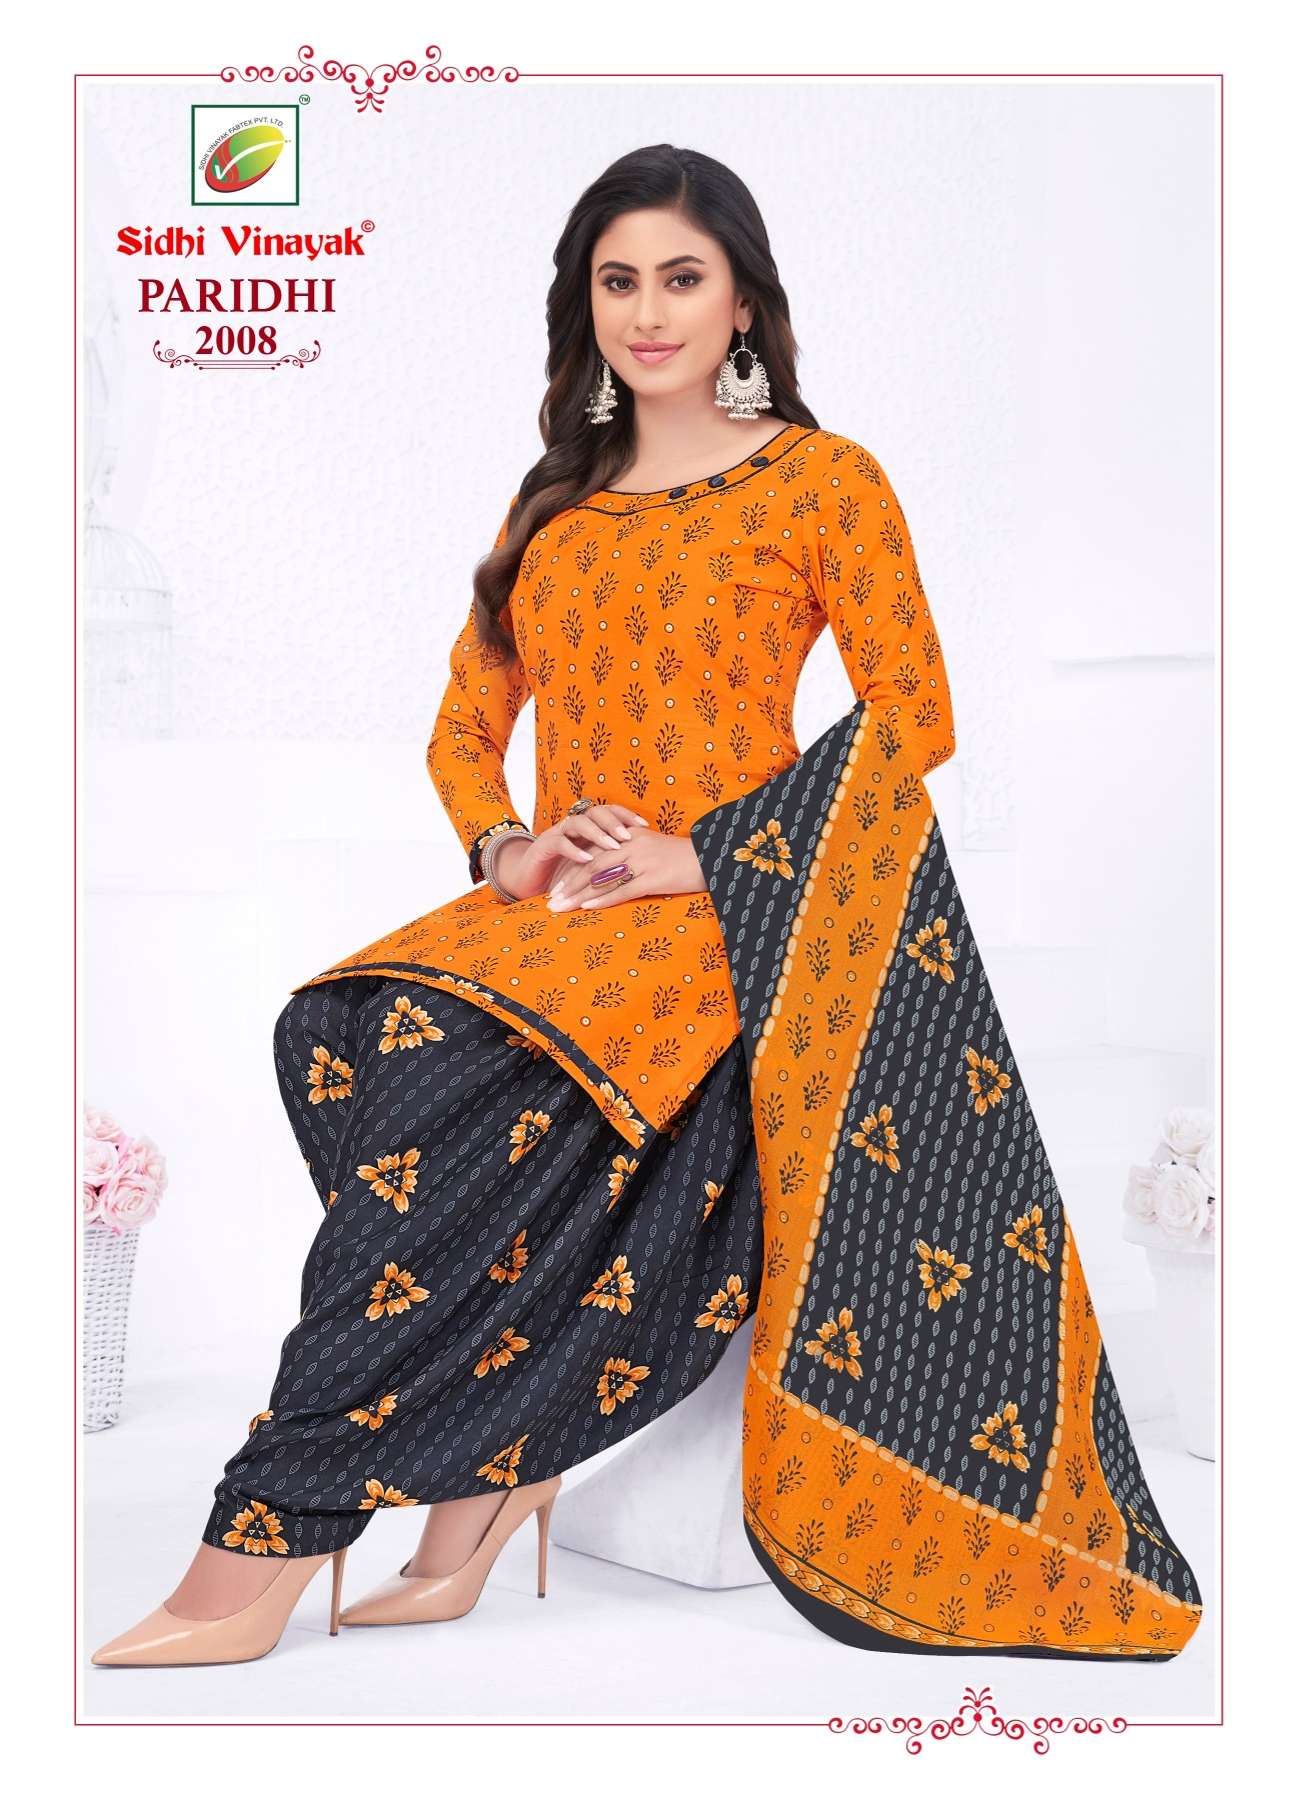 Sidhi Vinayak Paridhi Vol-2 – Dress Material Wholesale catalog